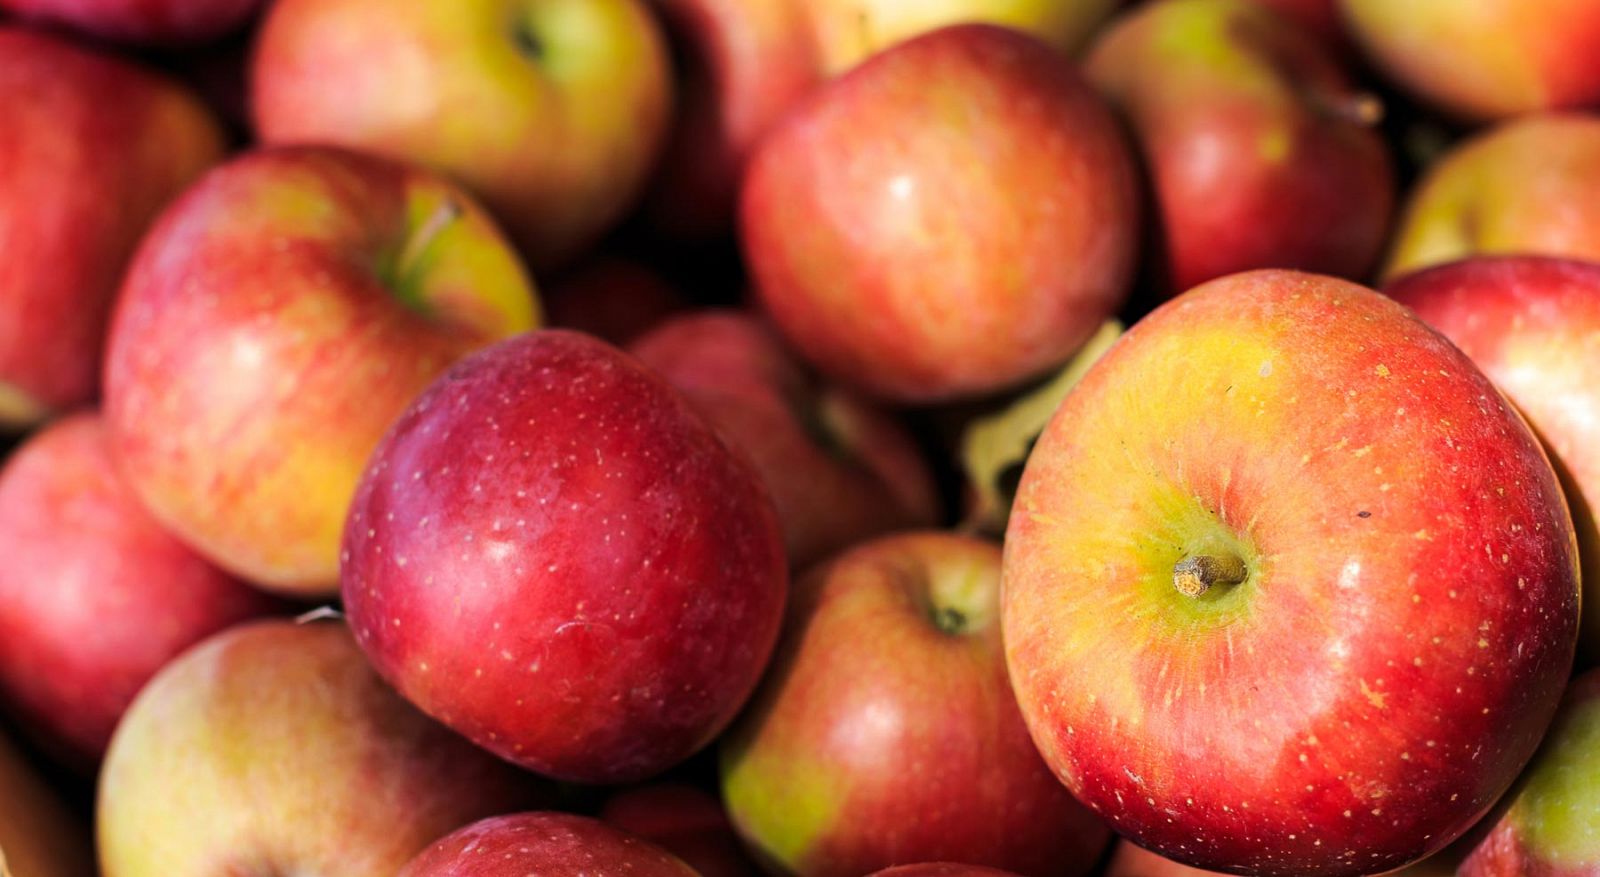 Moléculas presentes en la manzana pueden contribuir a reducir la grasa corporal.